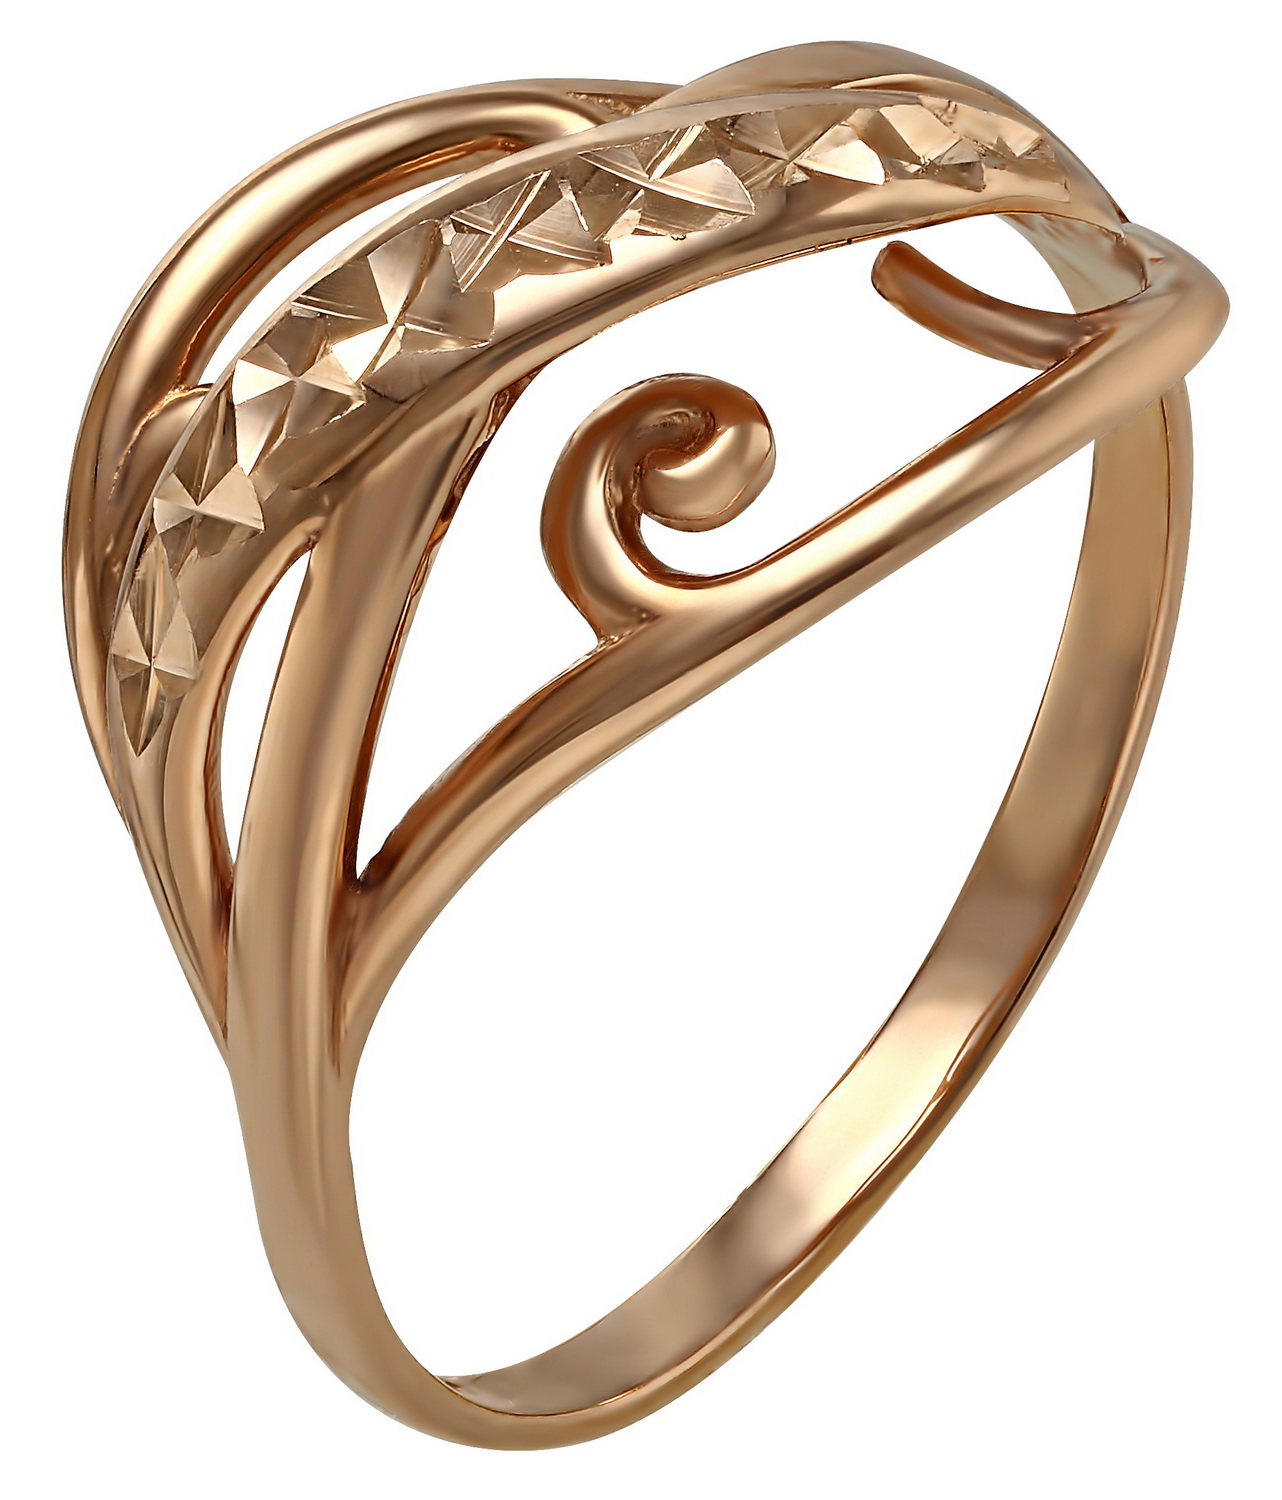 Кольцо золотое 19. Кольцо арт,51720 золото. Золотое кольцо с алмазной гранью. Золотое кольцо без вставок. Кольцо каблучка золотое.